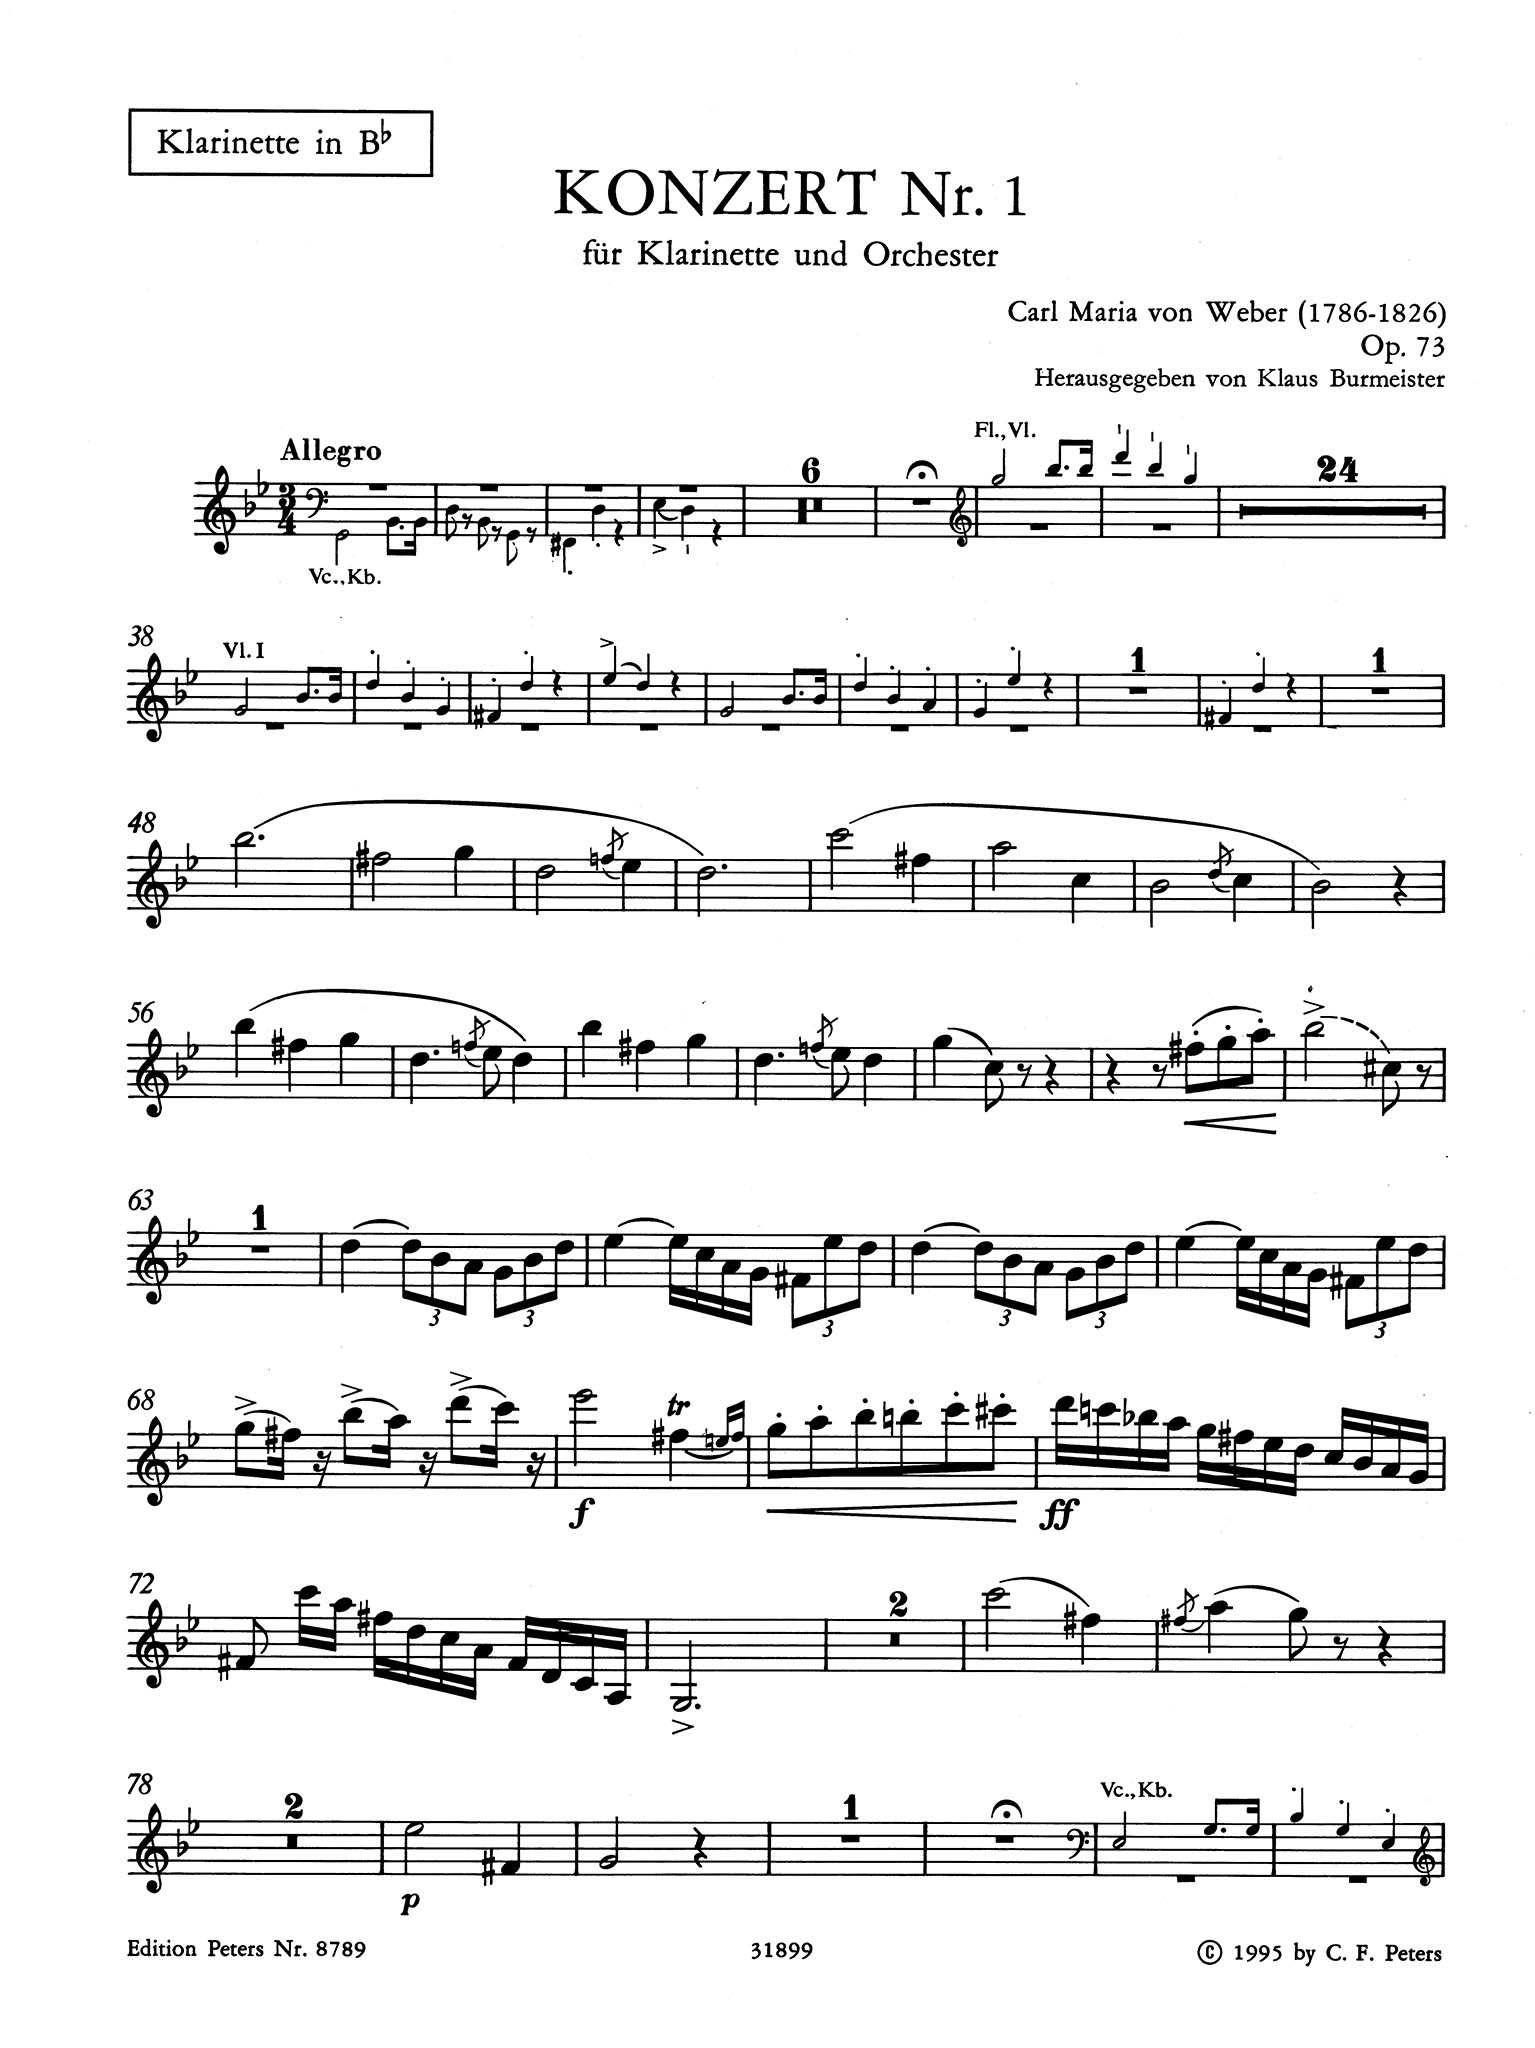 Clarinet Concerto No. 1 in F Minor, Op. 73 Clarinet part